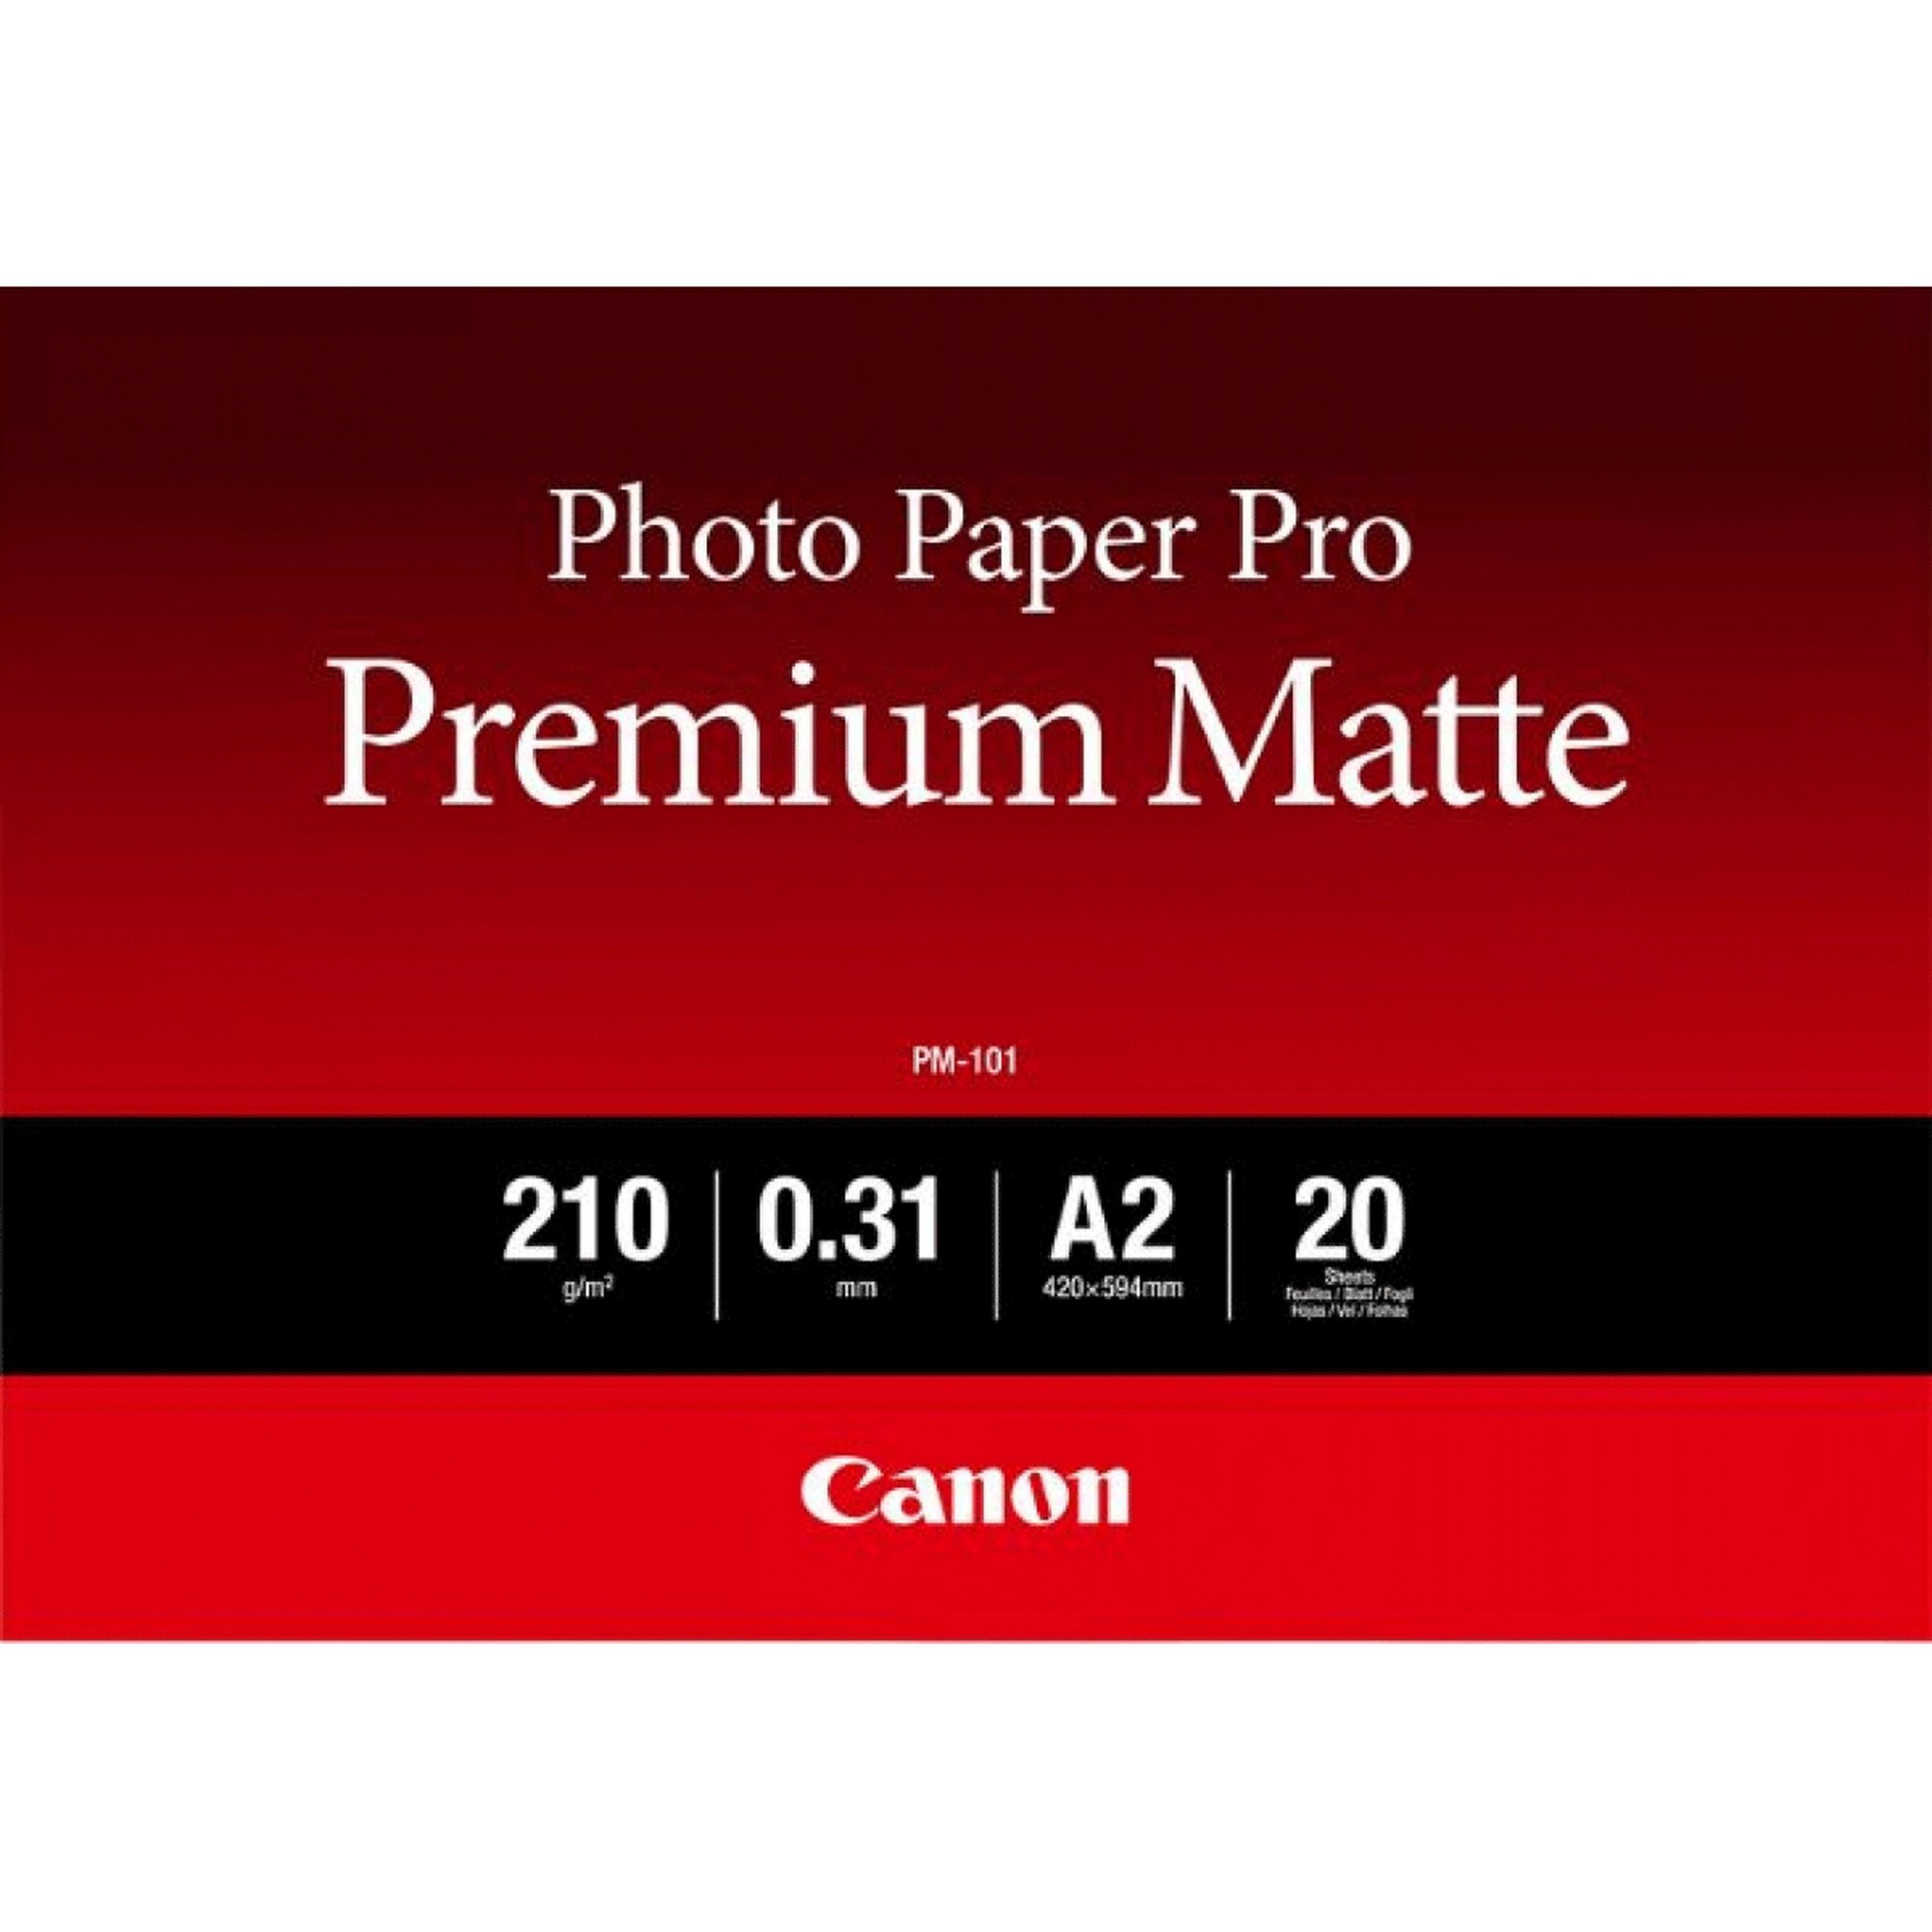 Photos - Office Paper Canon PM-101 Premium Matte Photo Paper A2 - 20 Sheets 8657B017 